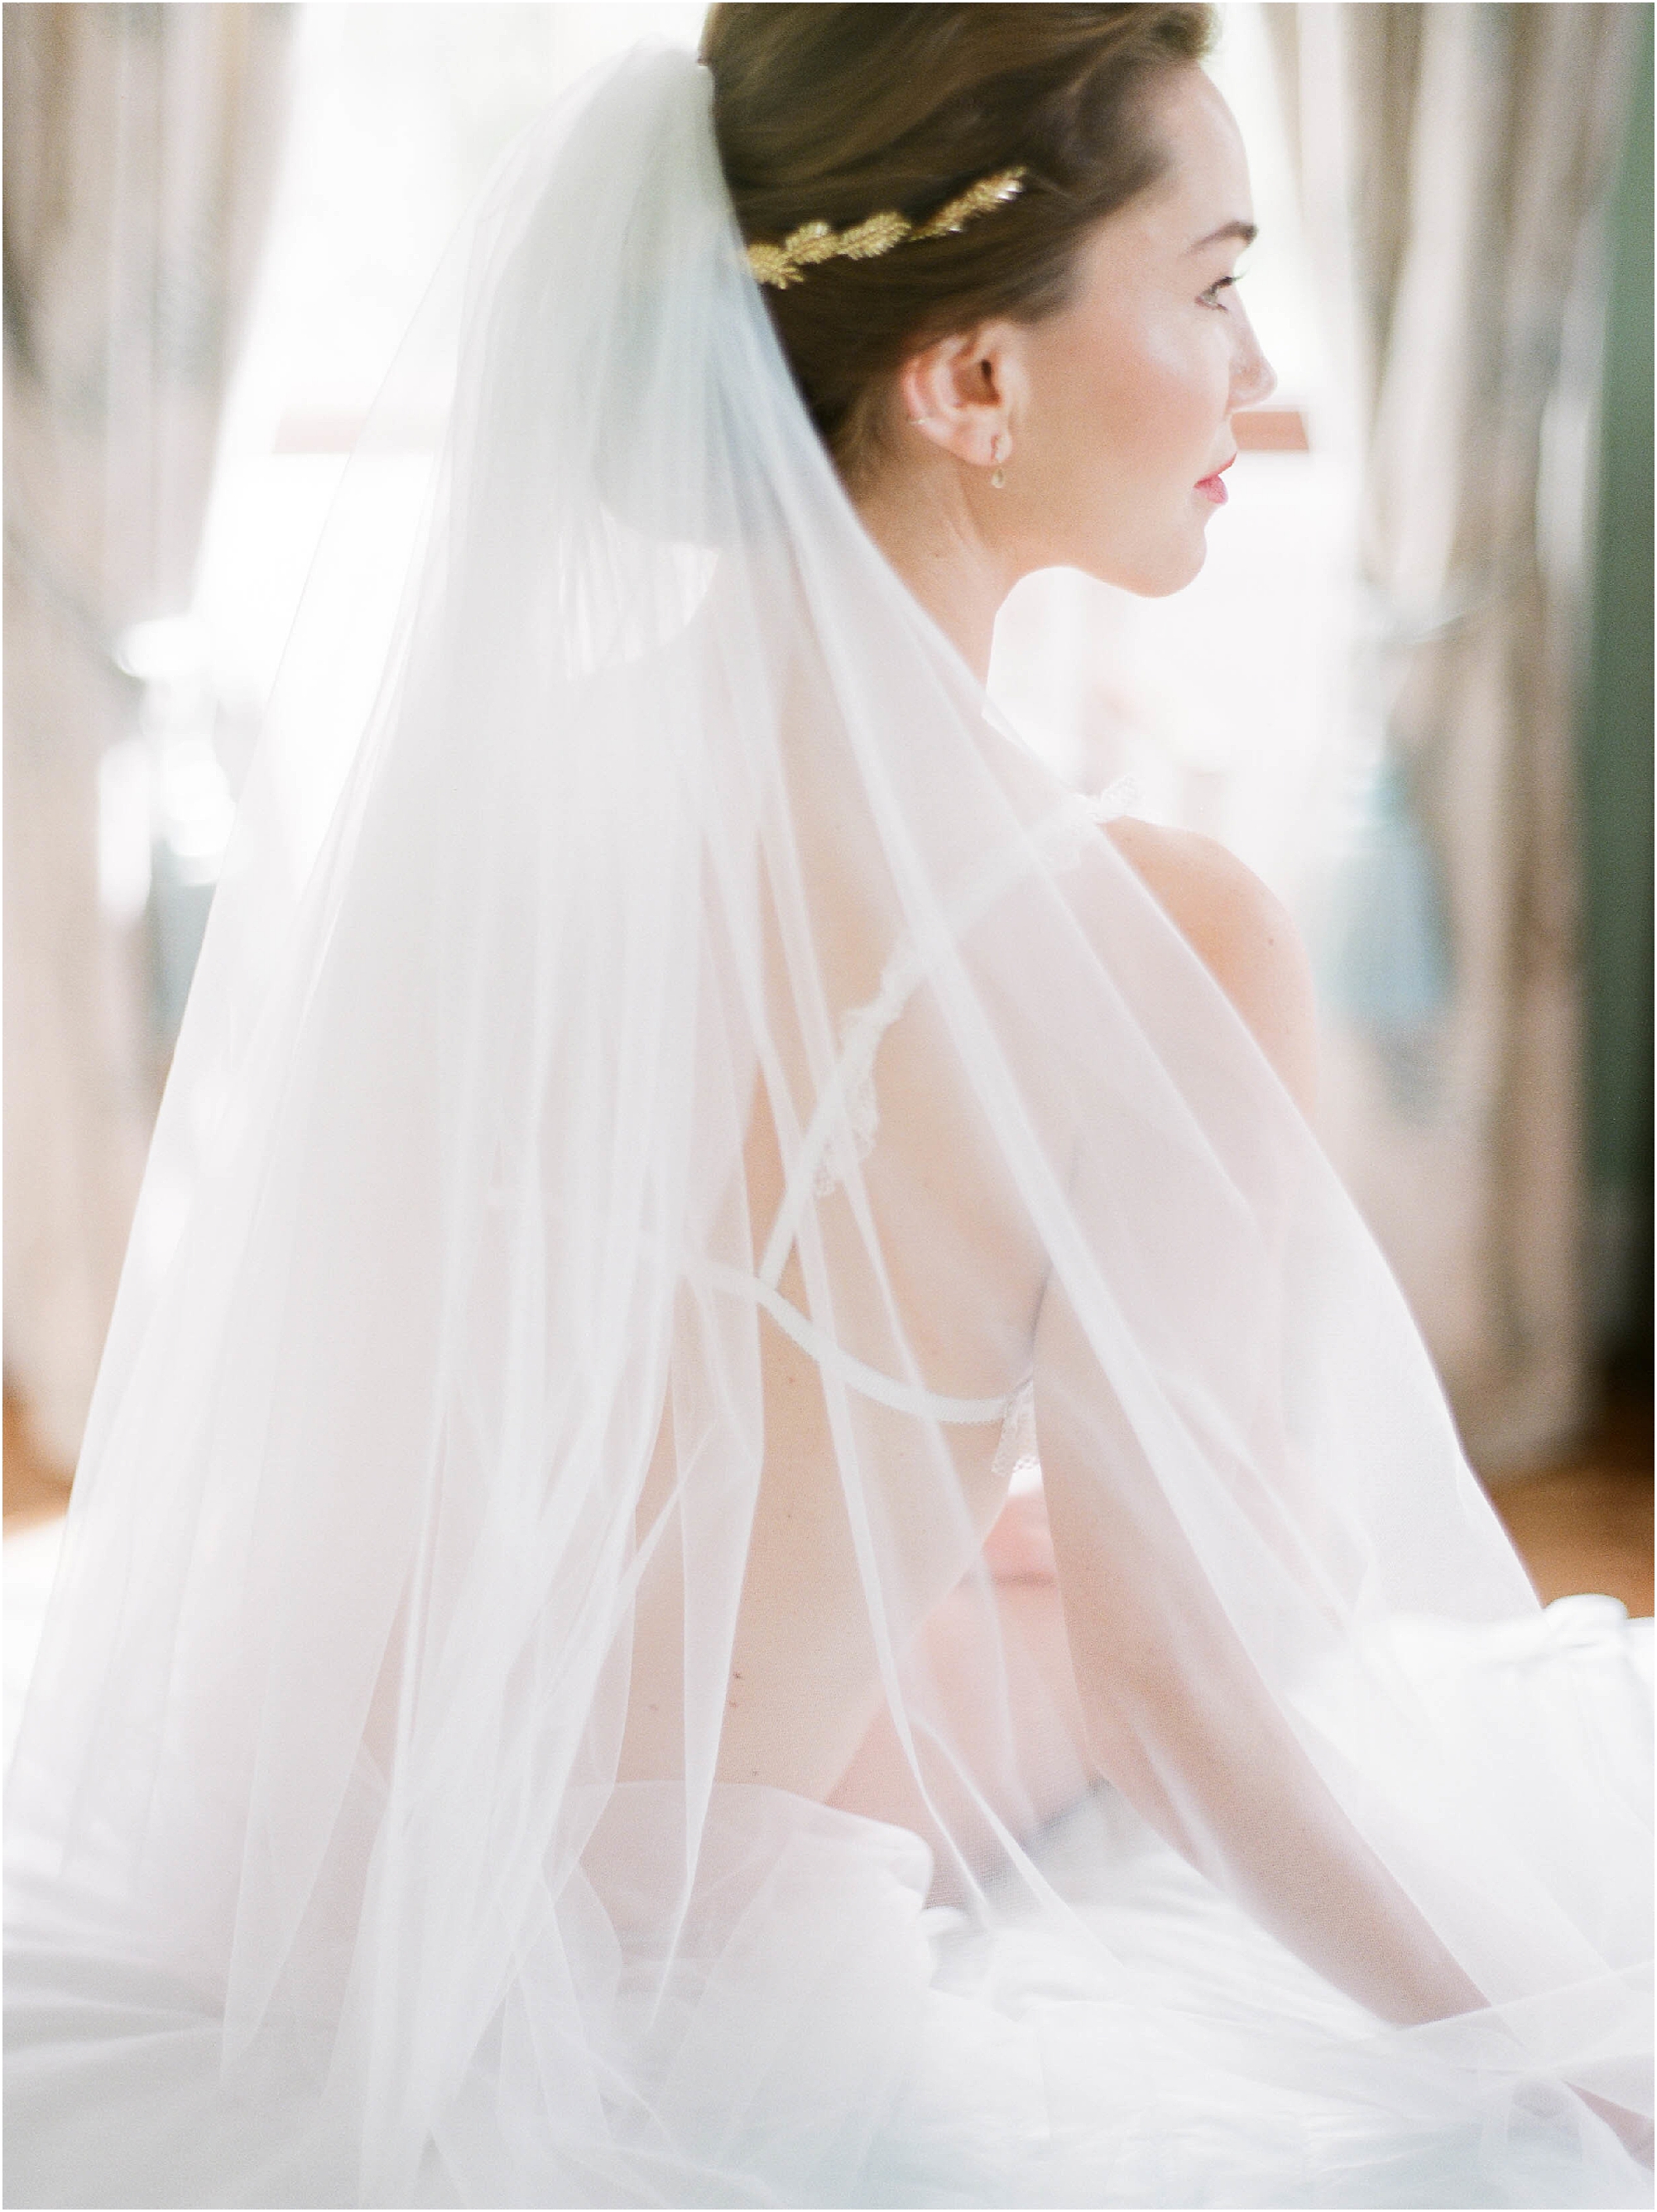 Details of veil on bride